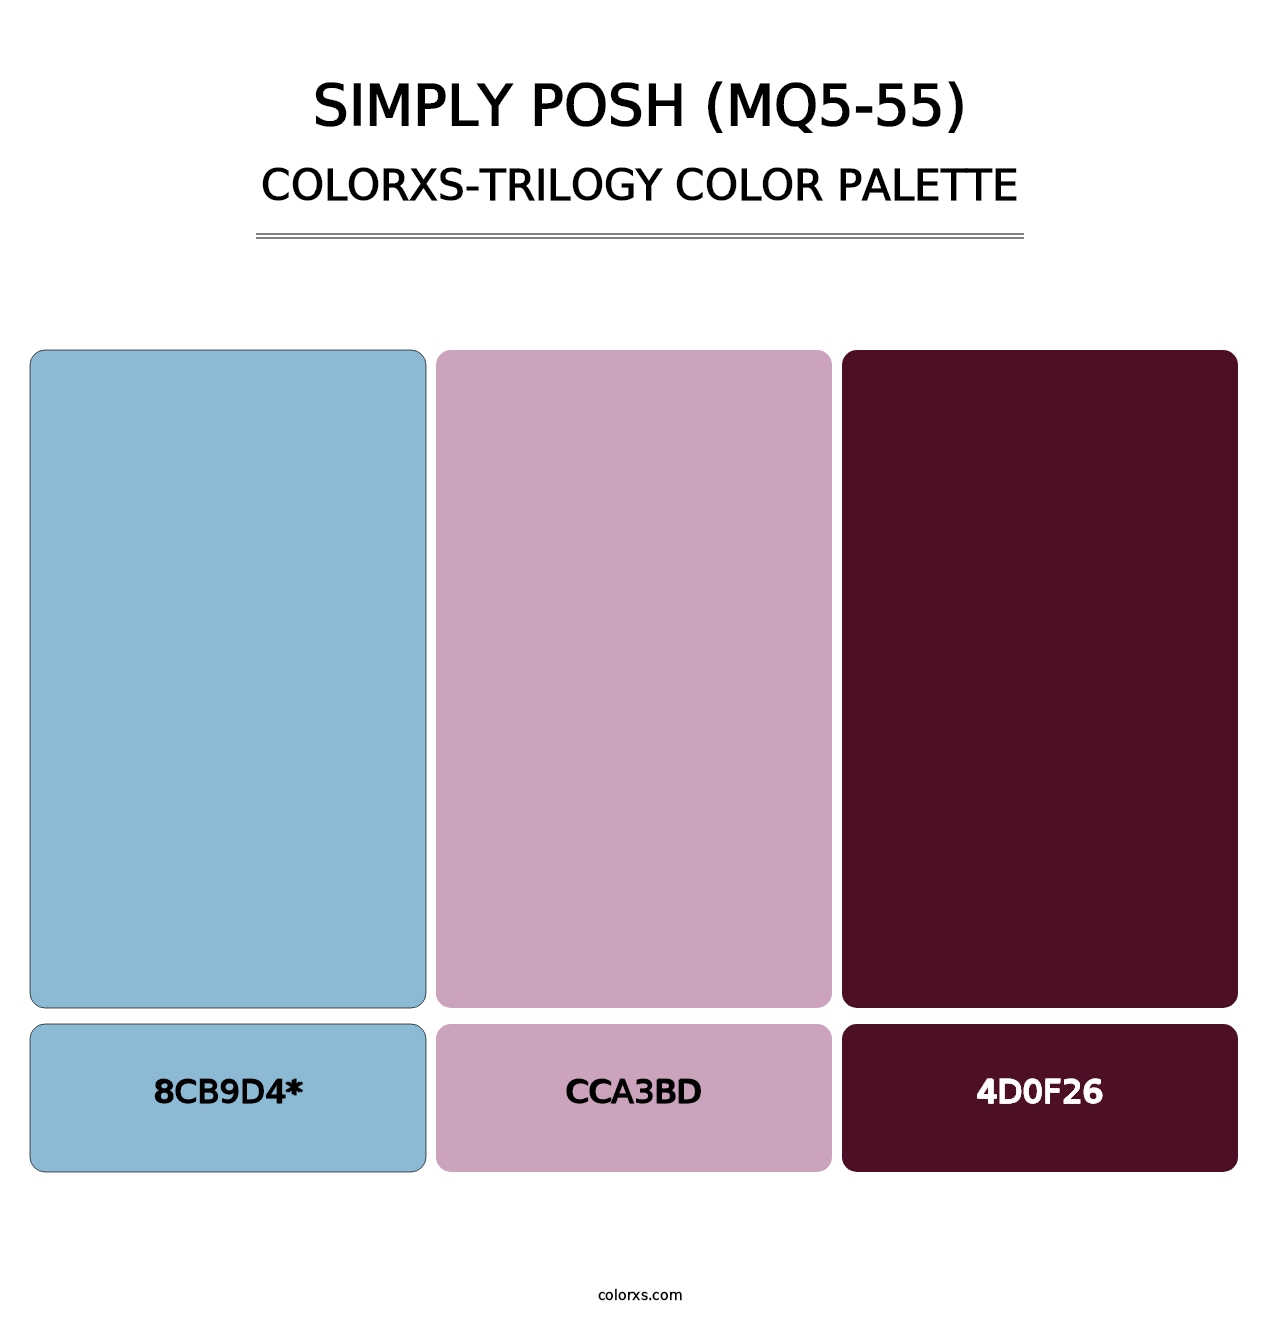 Simply Posh (MQ5-55) - Colorxs Trilogy Palette